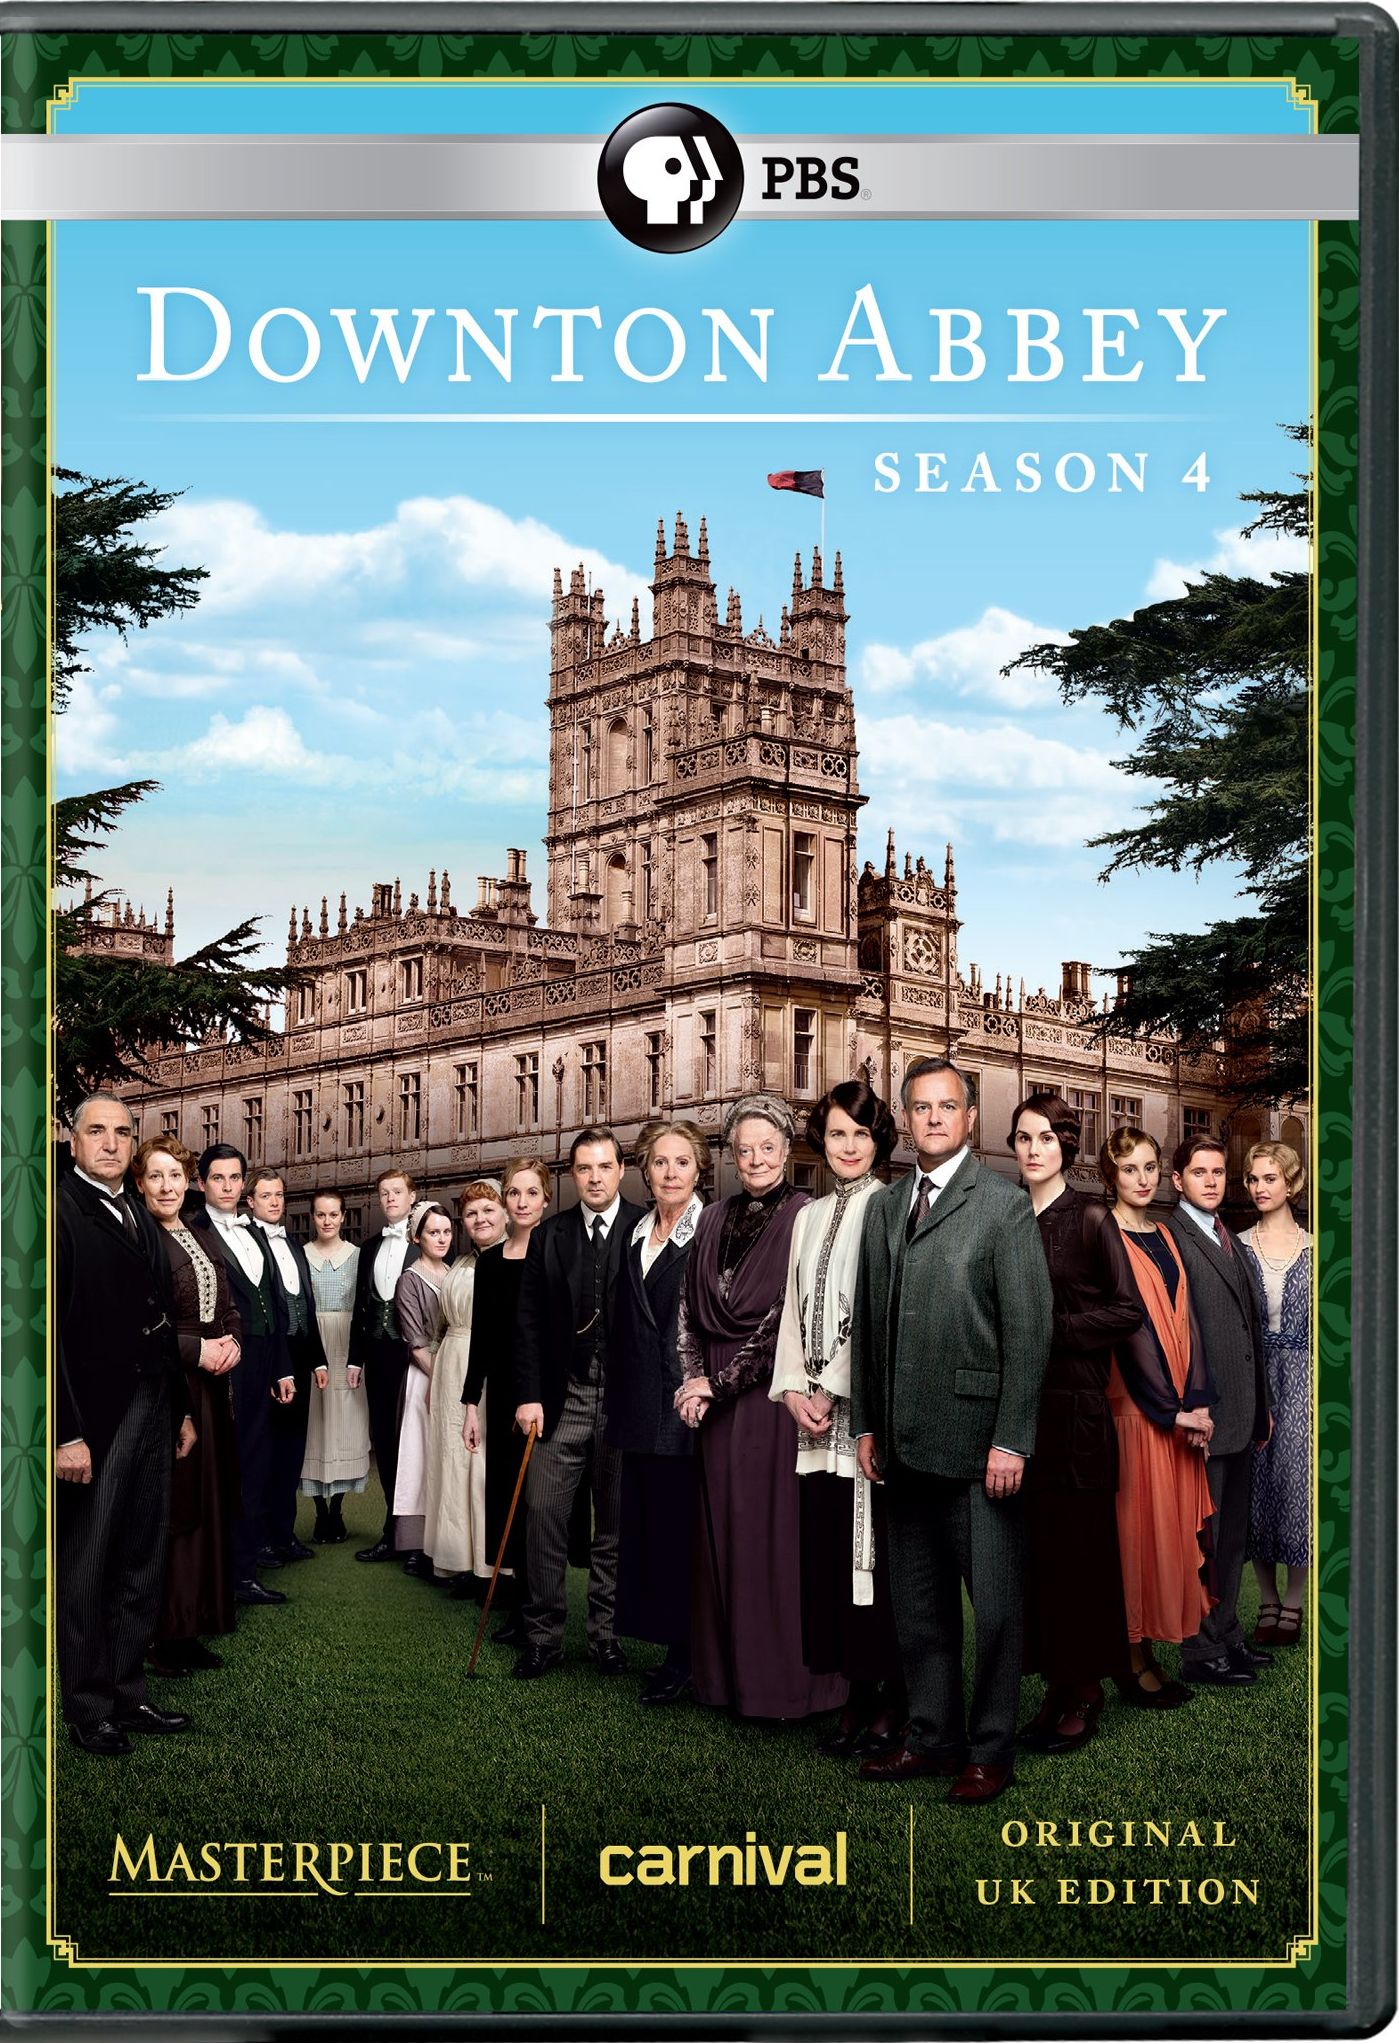 Downton Abbey season 4